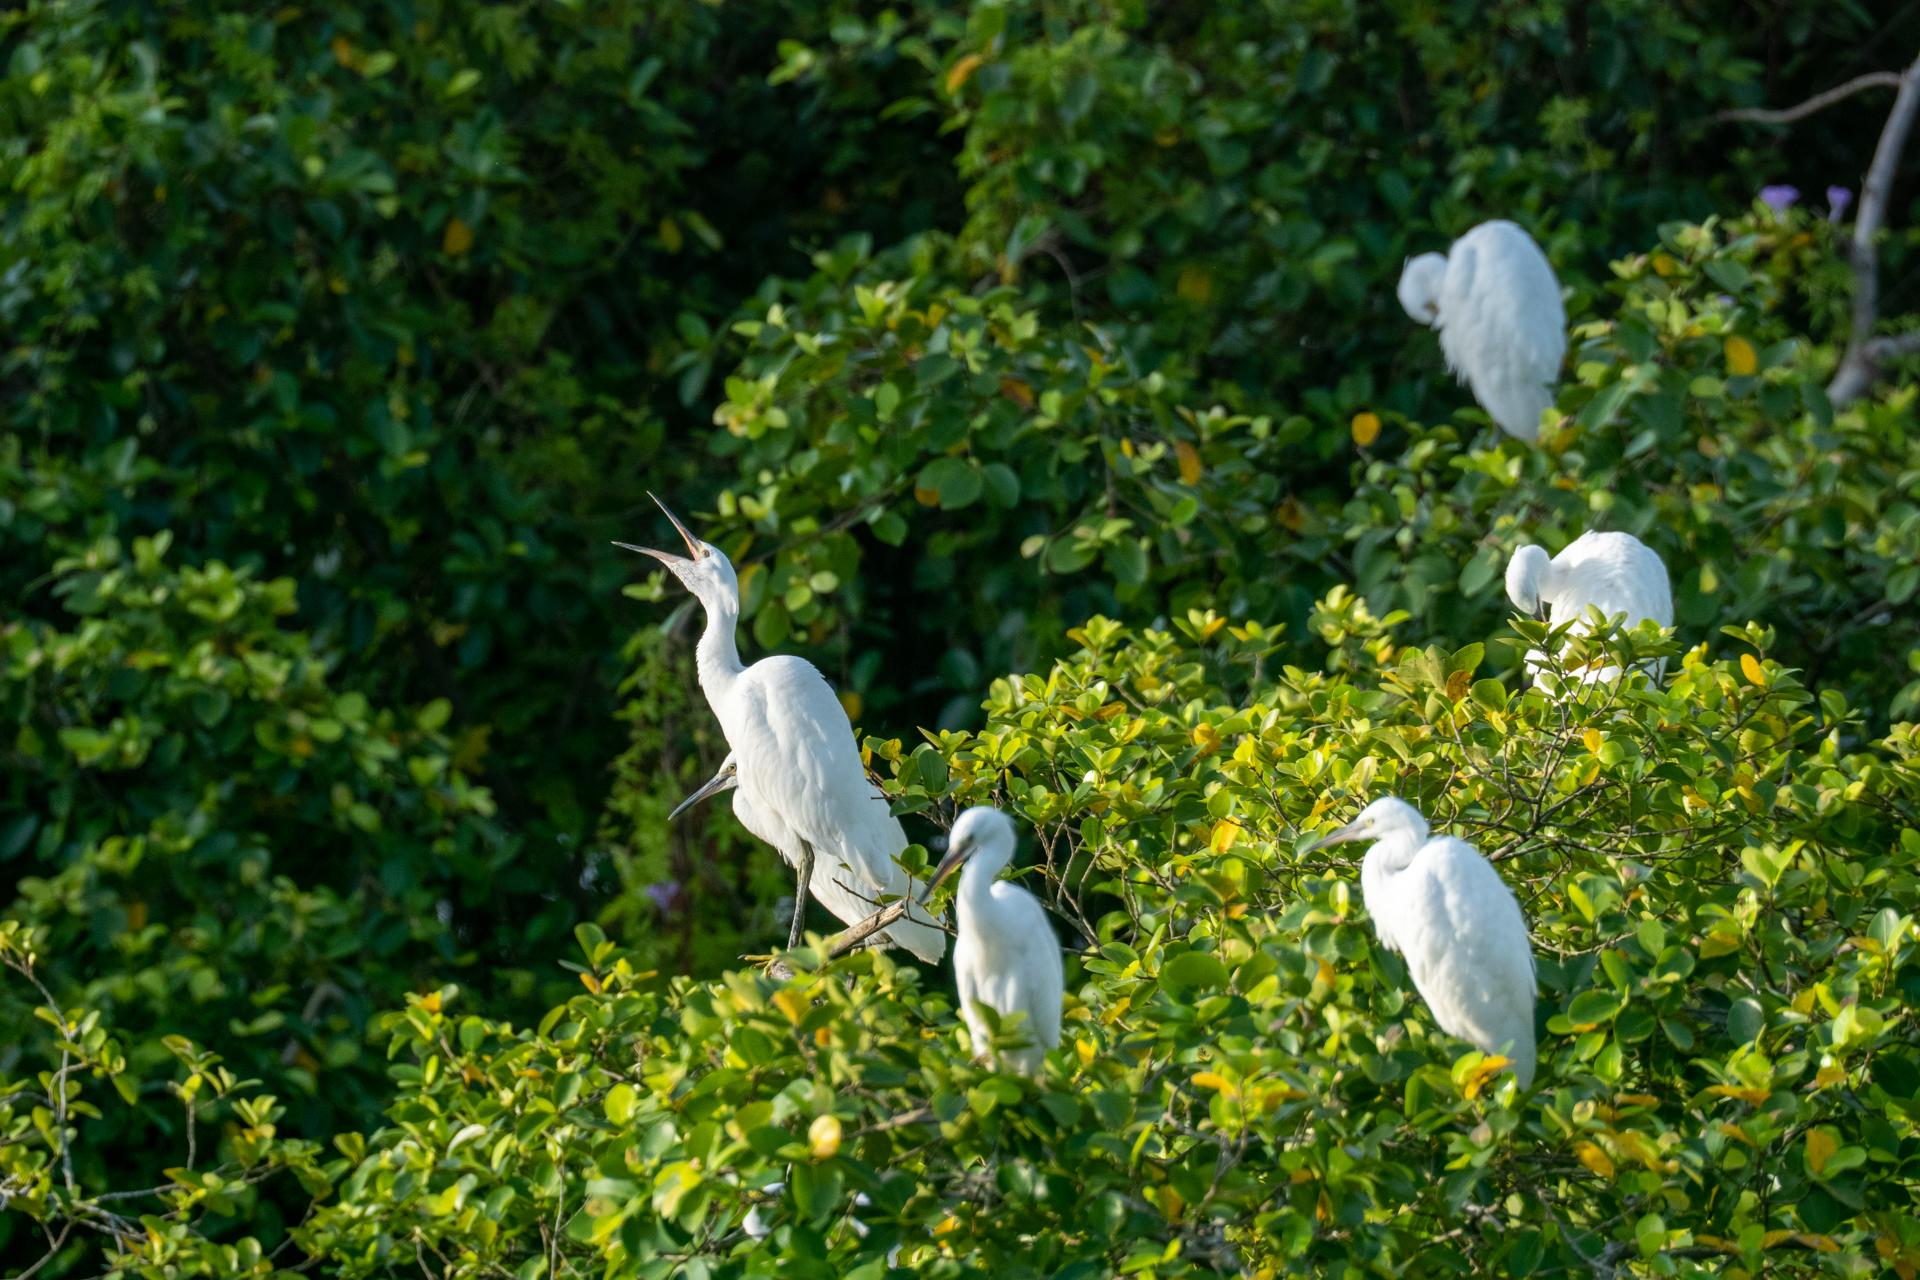 江门市启超故里·小鸟天堂文化旅游区是全国最大的天然赏鸟乐园之一。阮国志 摄